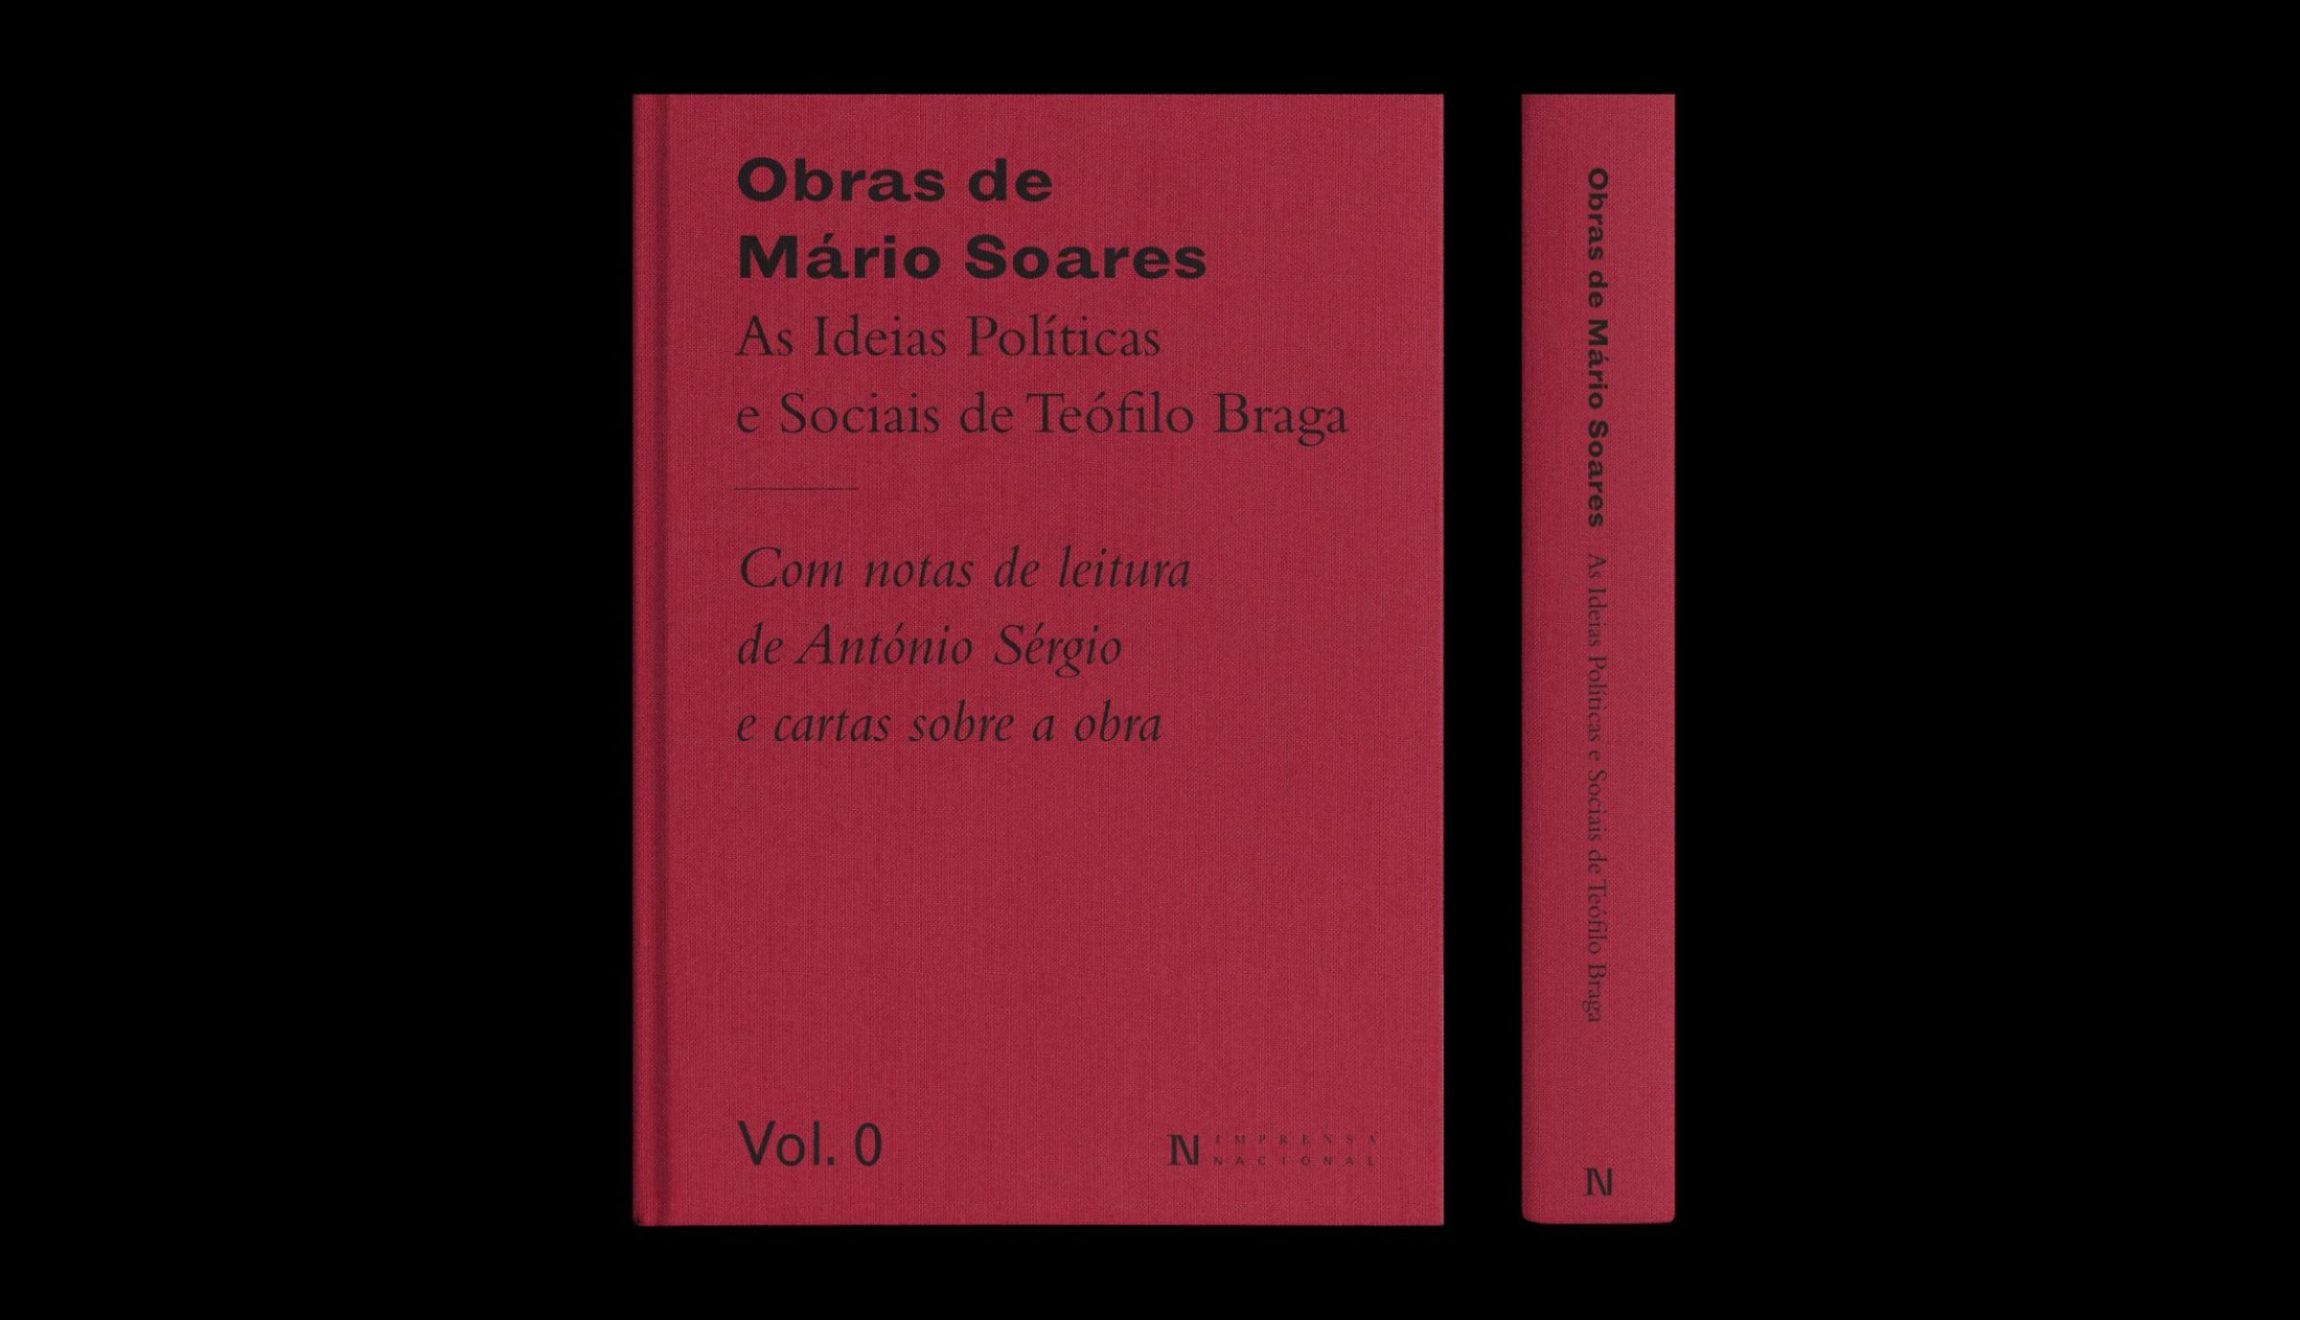 Imprensa Nacional apresenta esta segunda-feira  a coleção Obras de Mário Soares